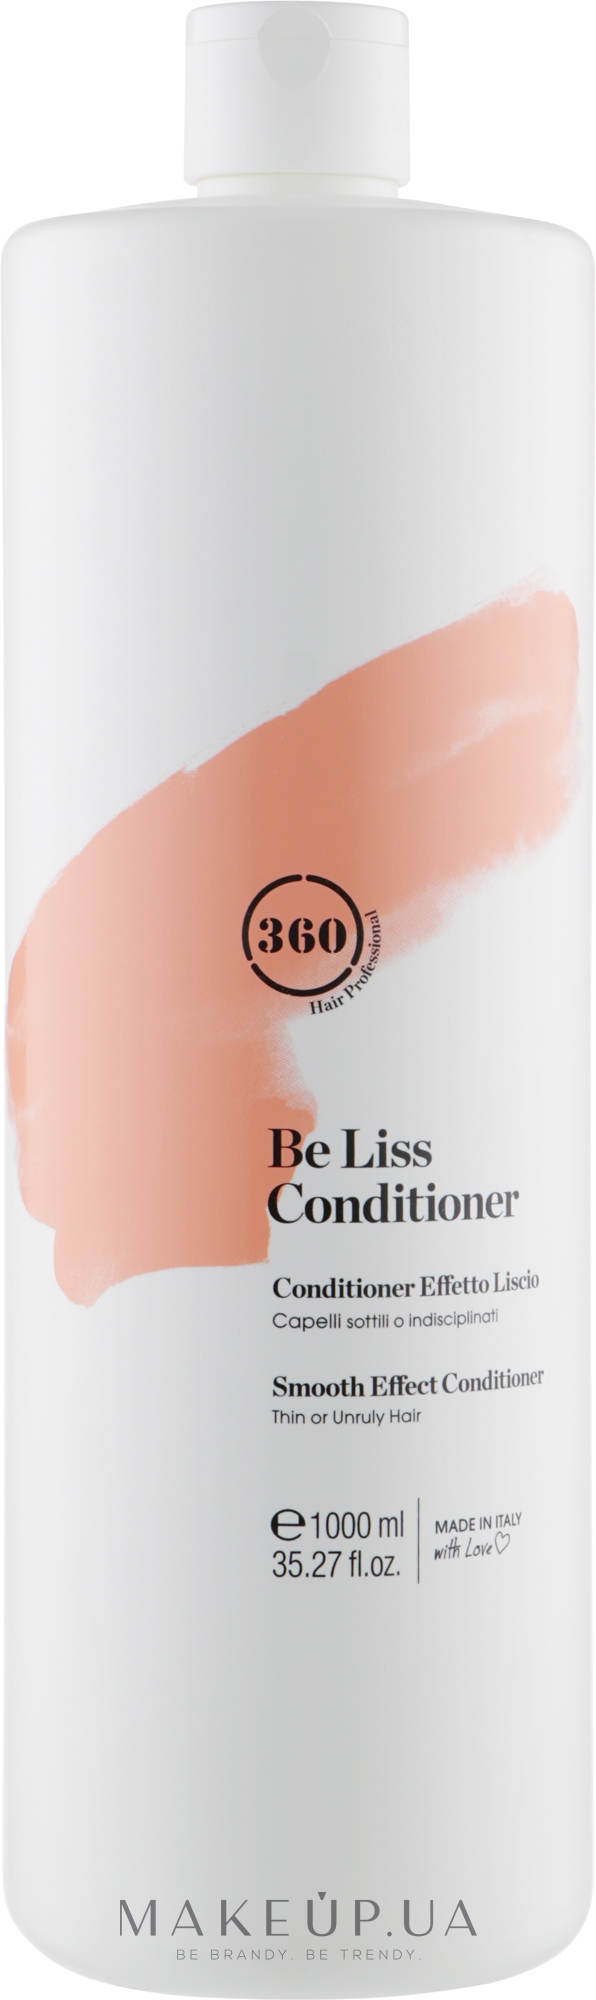 Кондиционер с эффектом разглаживания для тонких и непослушных волос - 360 Be Liss Conditioner  — фото 1000ml